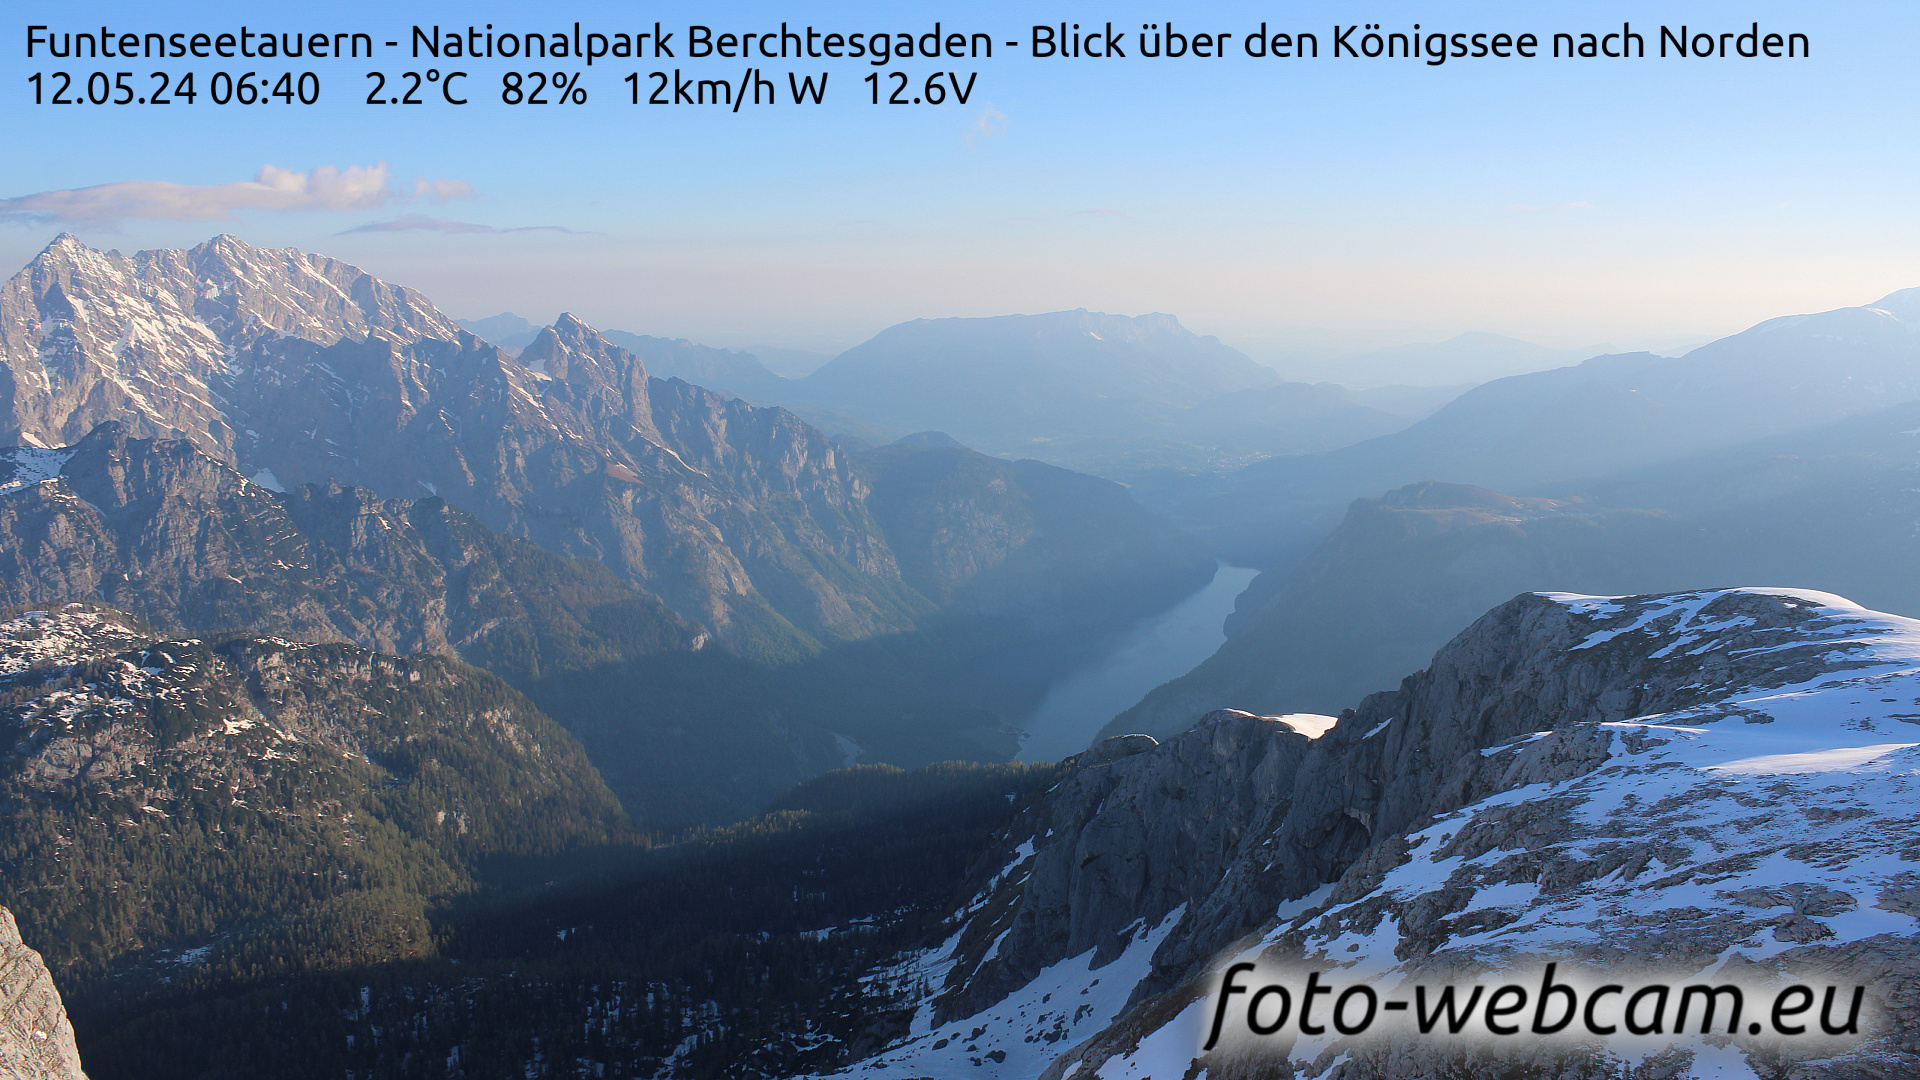 Berchtesgaden Do. 06:48